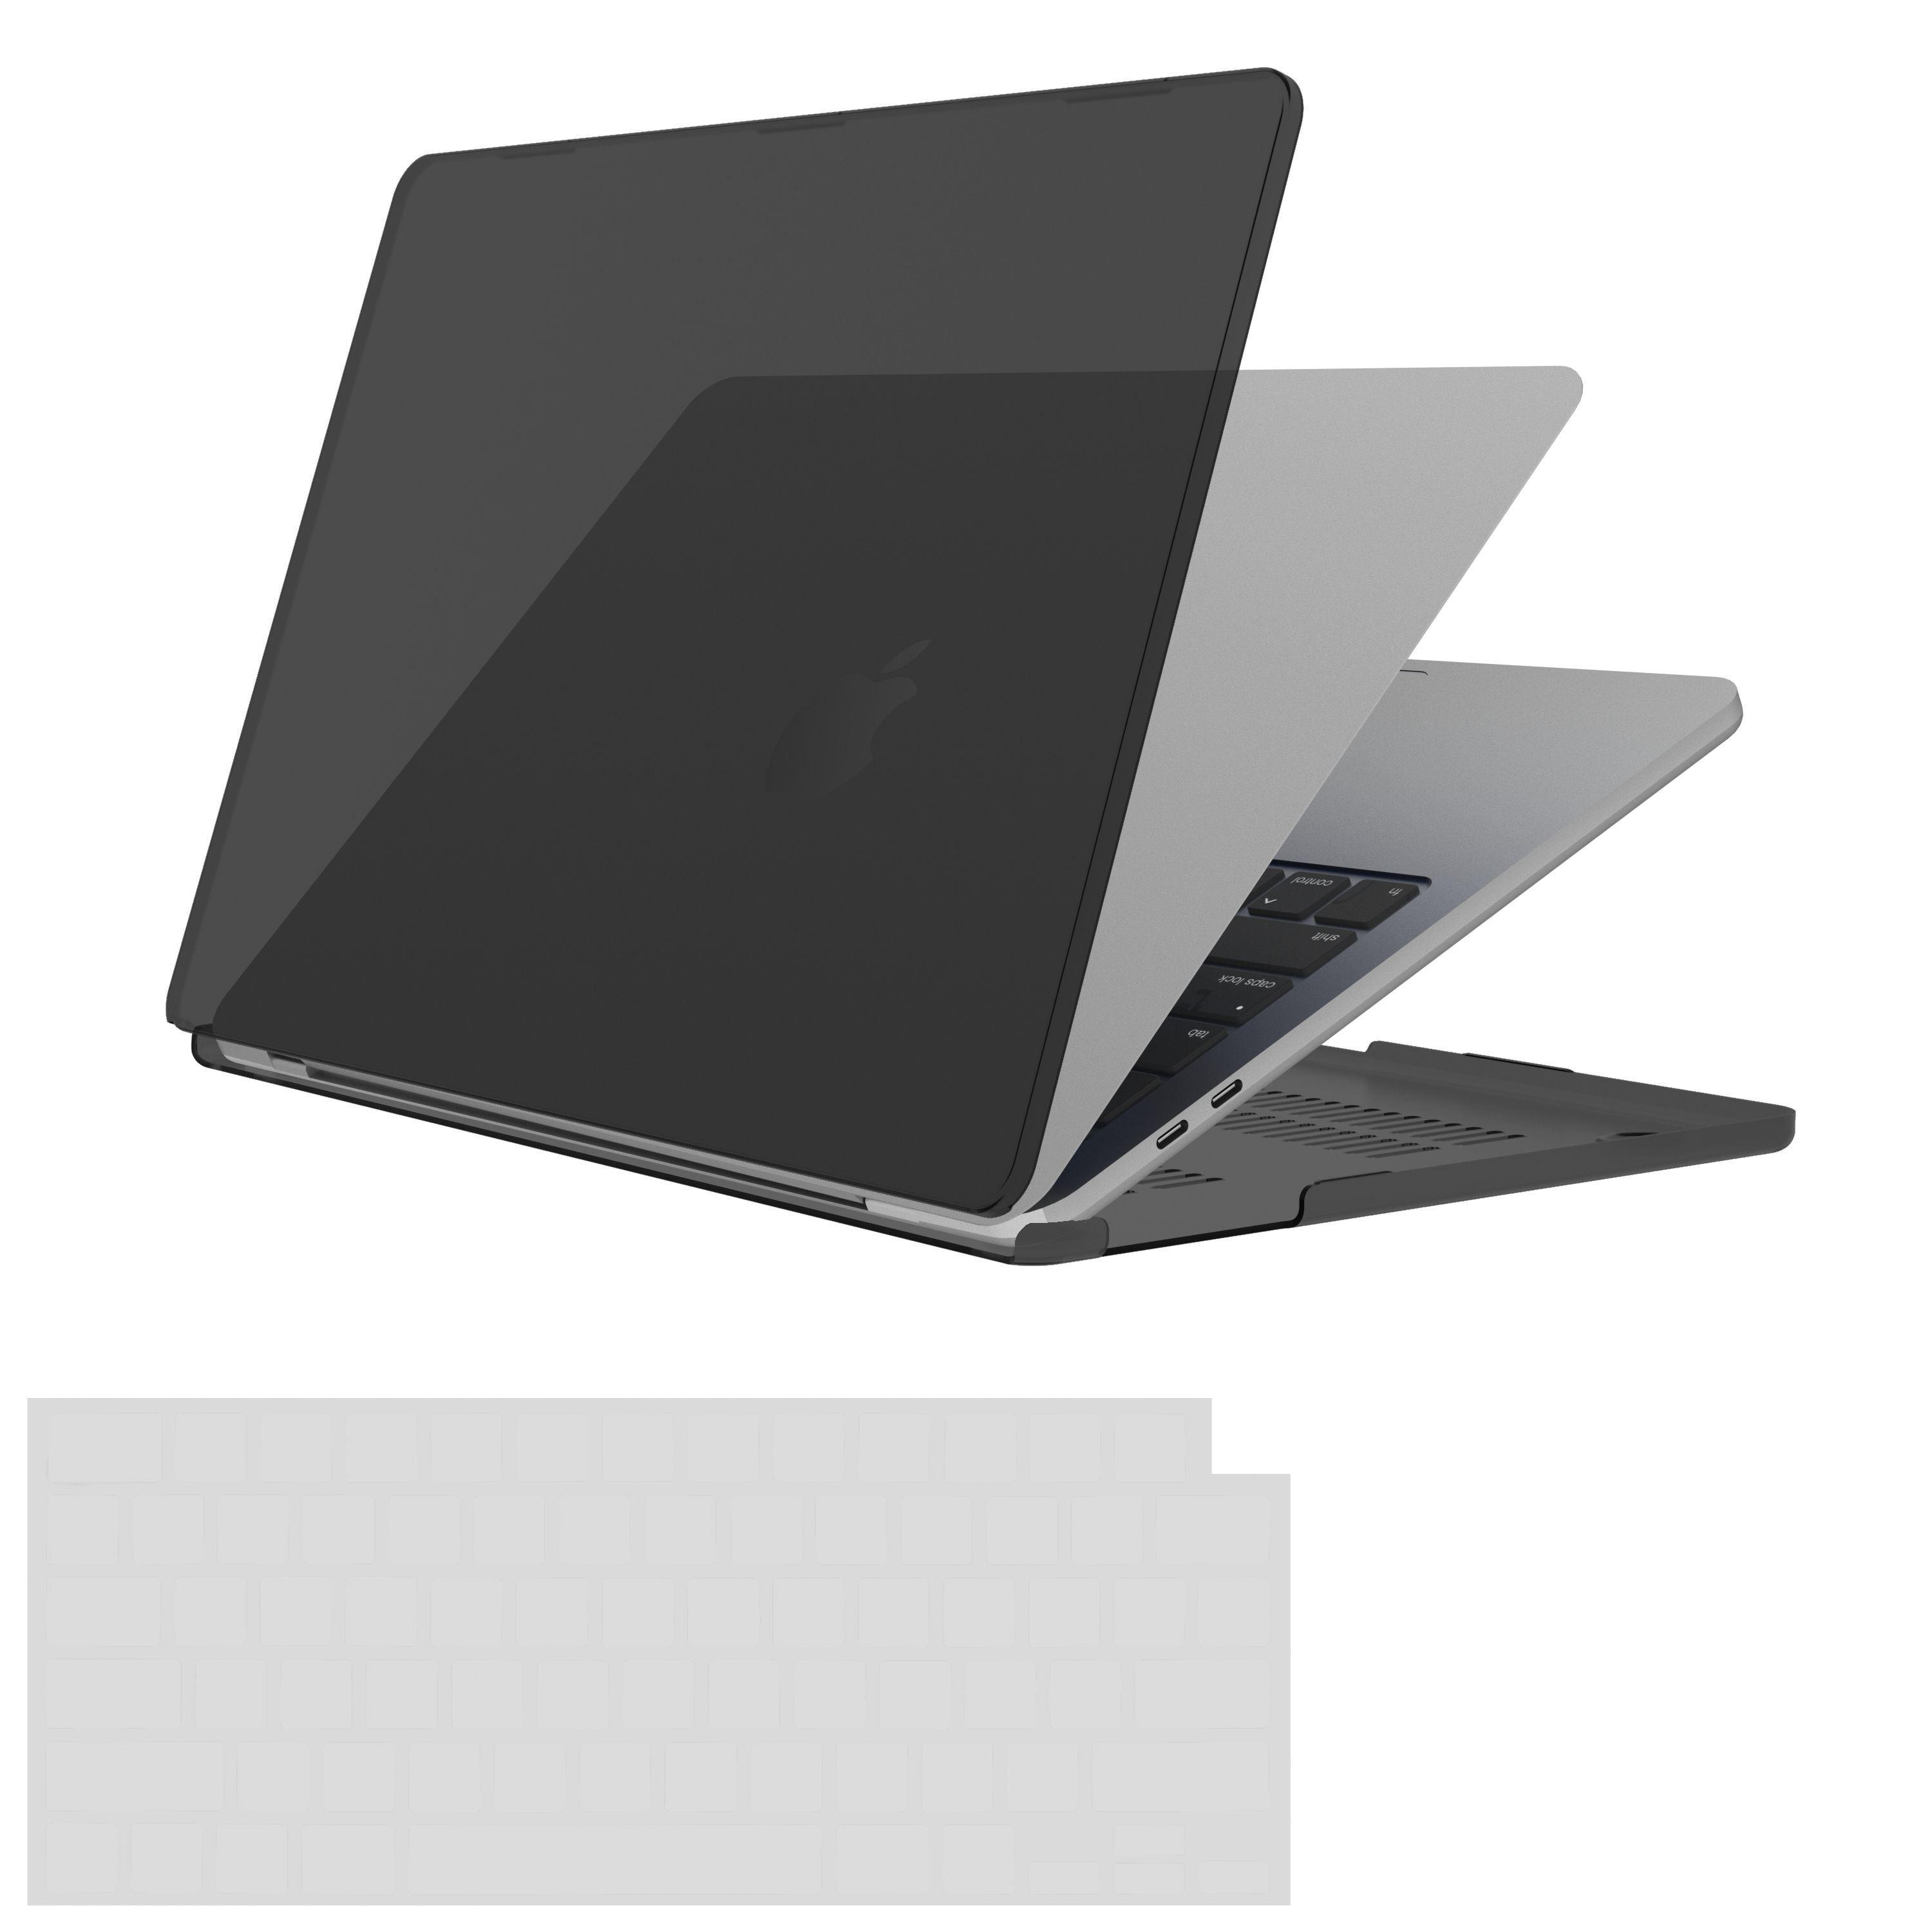 CASE-MATE Snap-On Laptophülle Bumper Grau/Transparent Kunststoff, für Apple